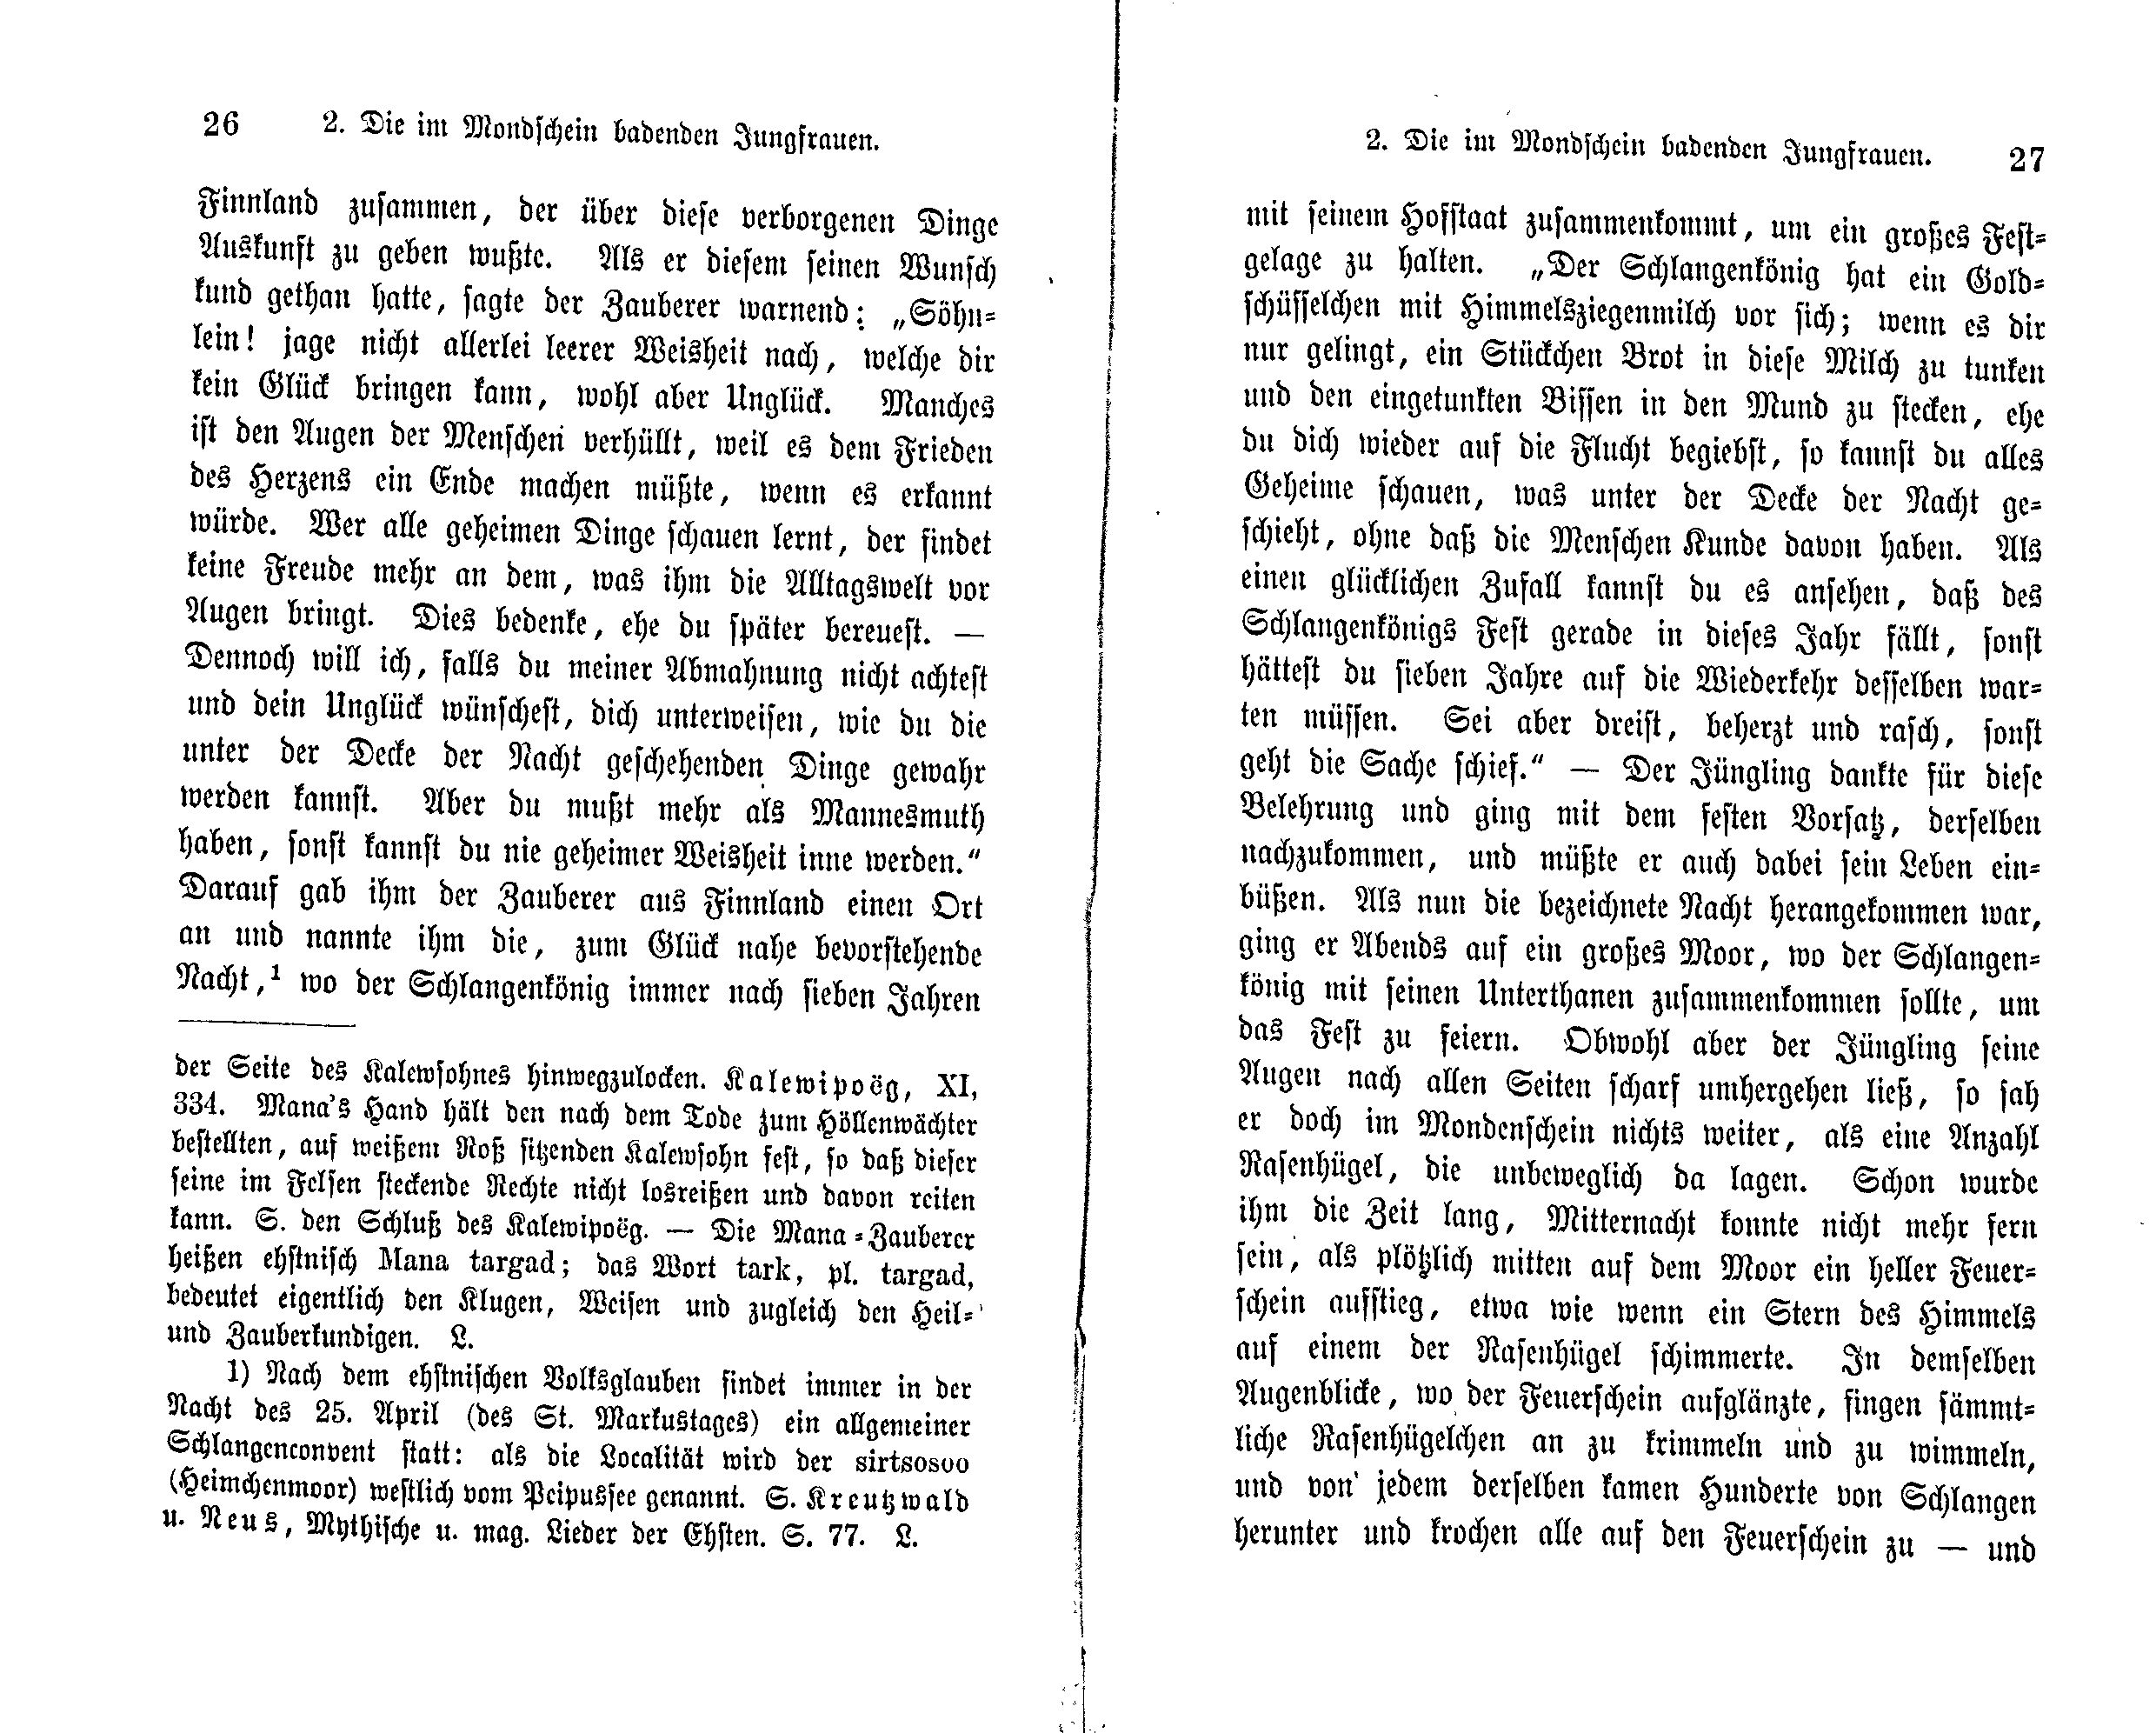 Die im Mondschein badenden Jungfrauen (1869) | 2. (26-27) Основной текст